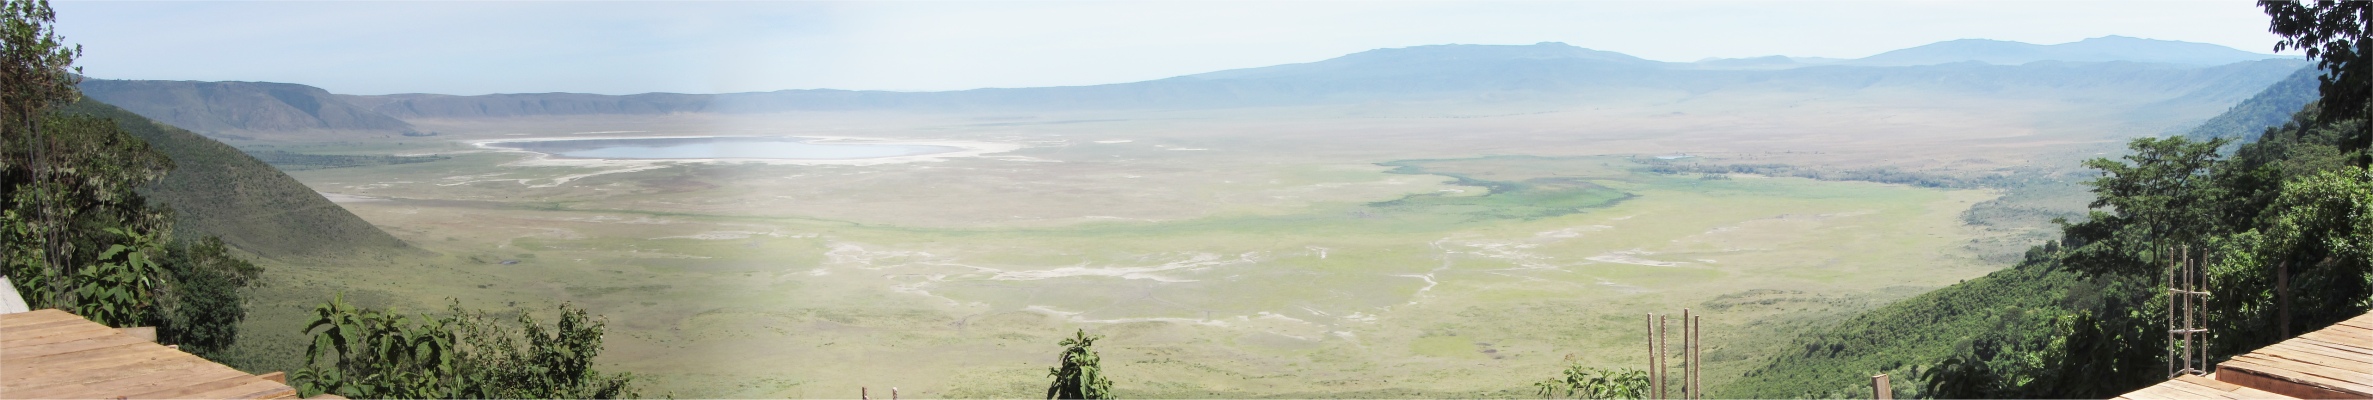 ngorongoro_crater_view_from _rim